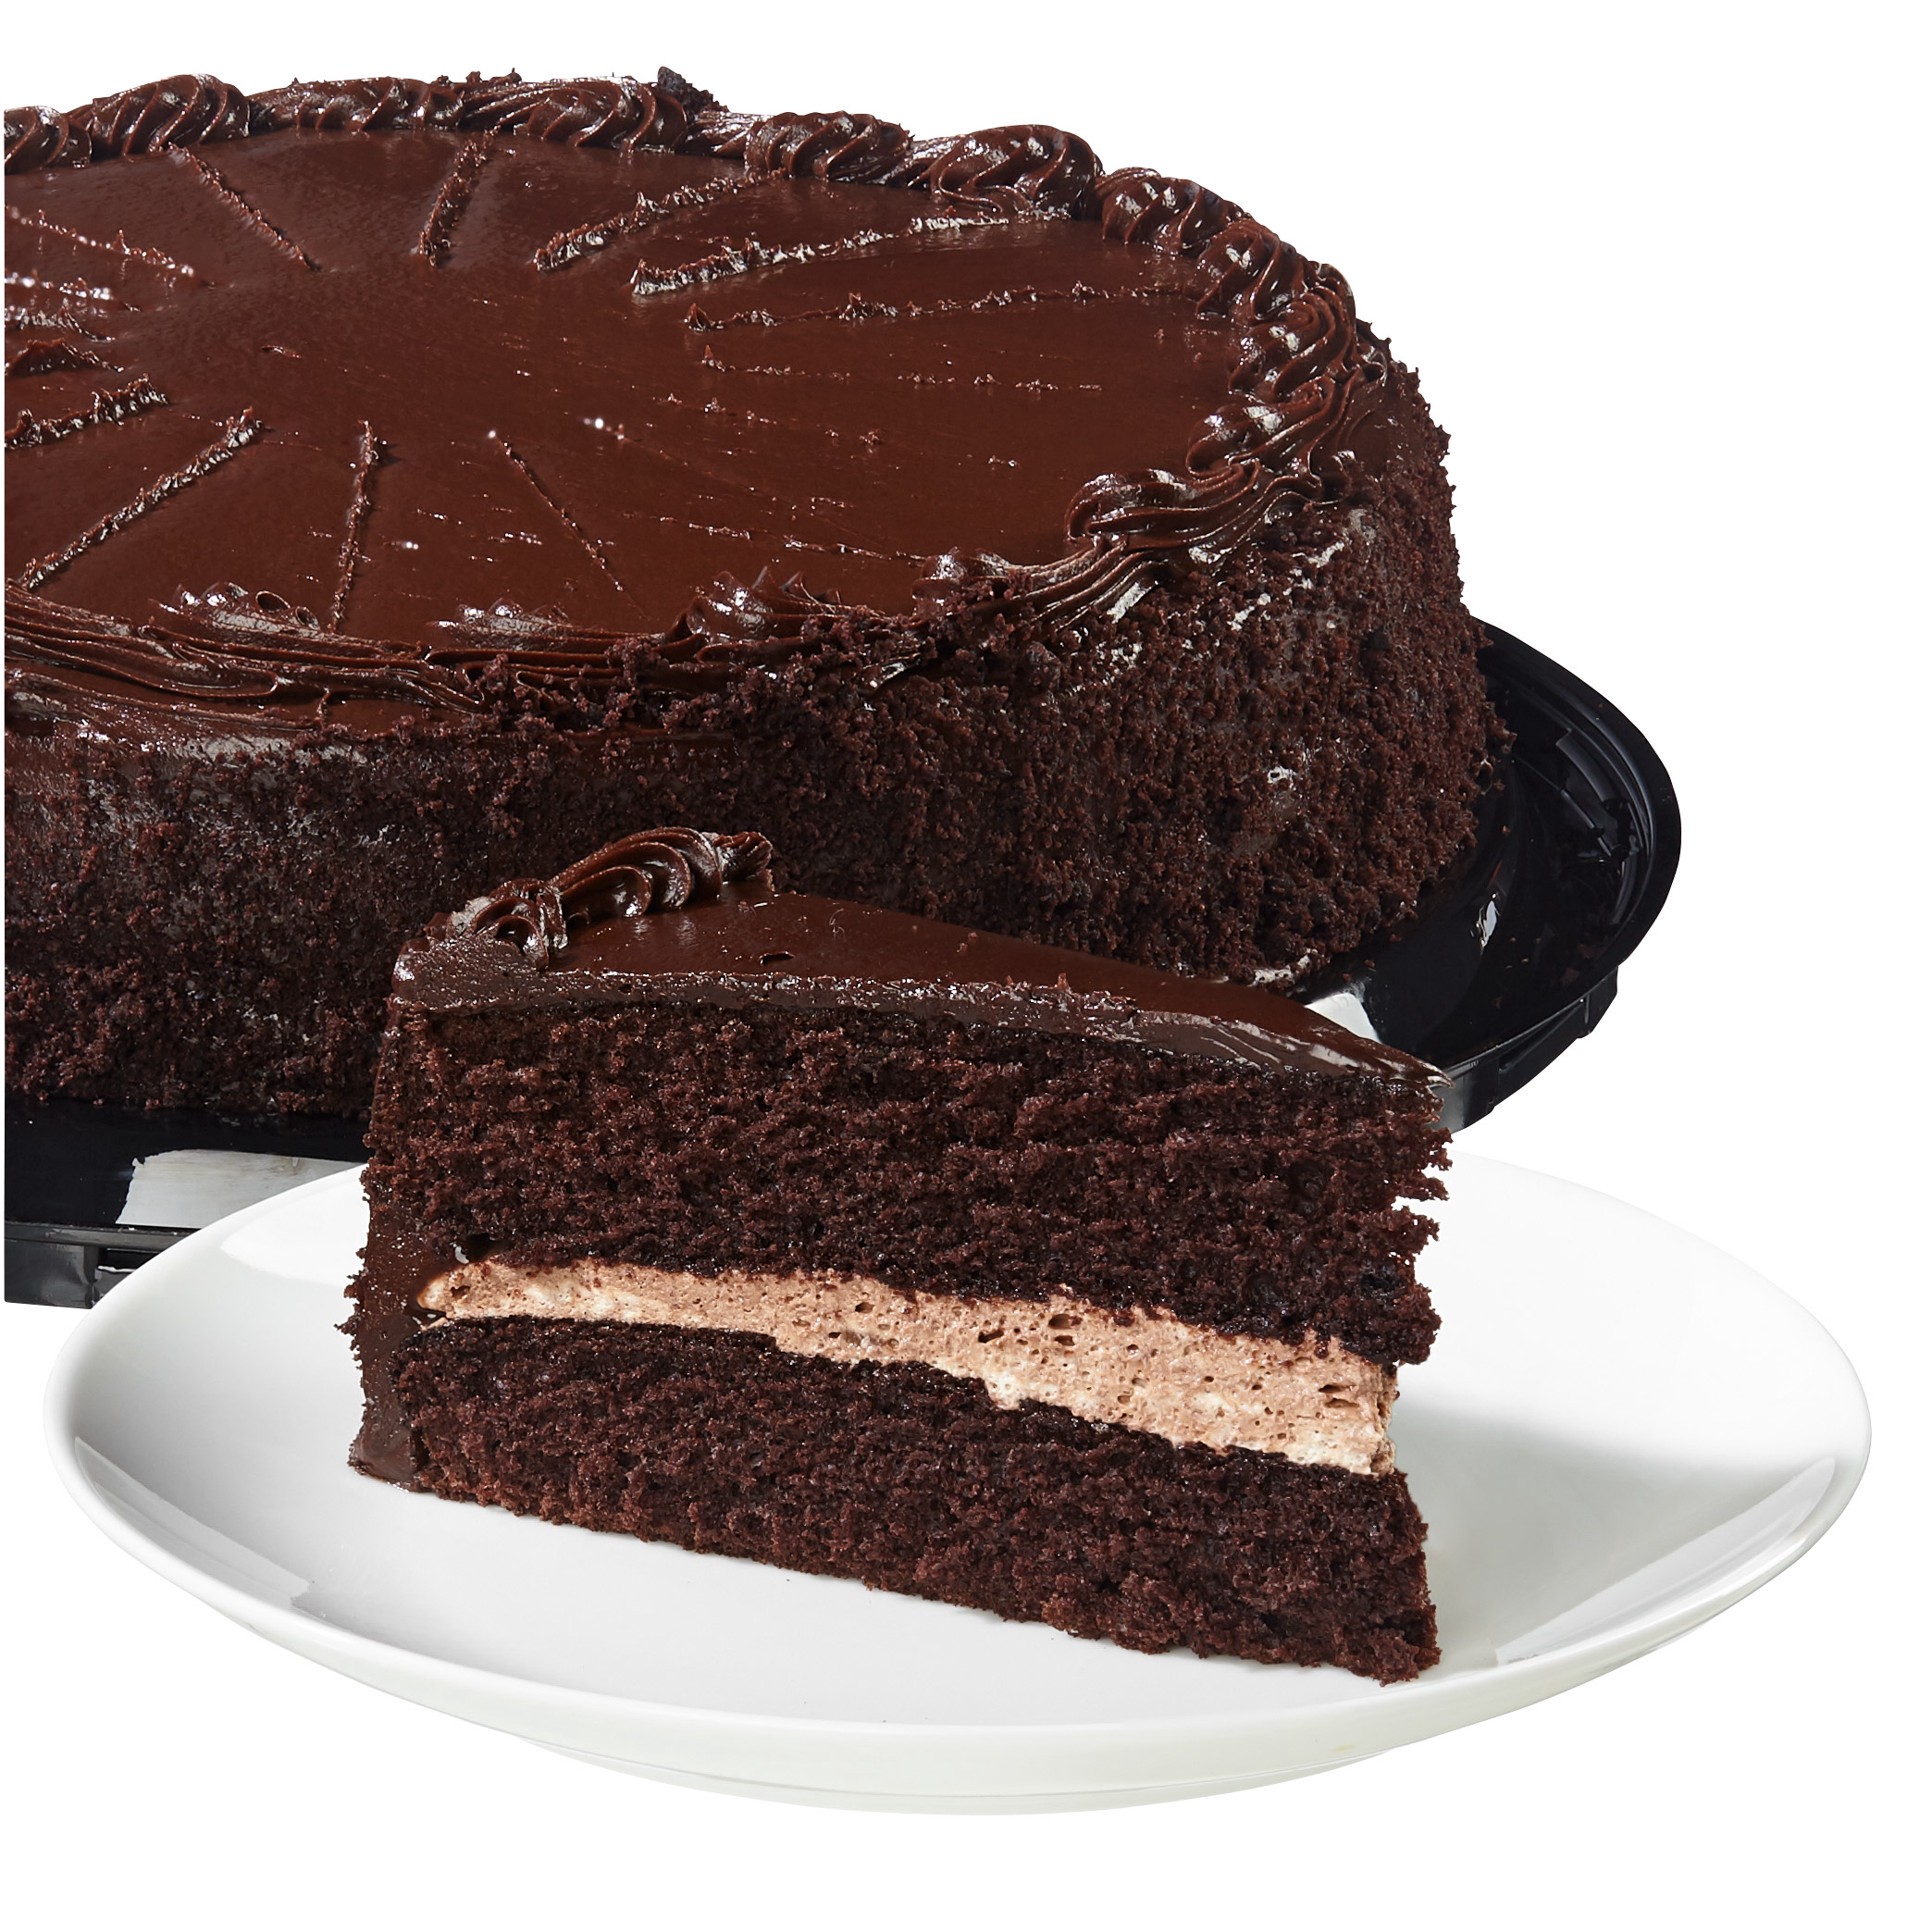 Costco Bakery Mini All American Chocolate Cakes, 6 ct | Costco